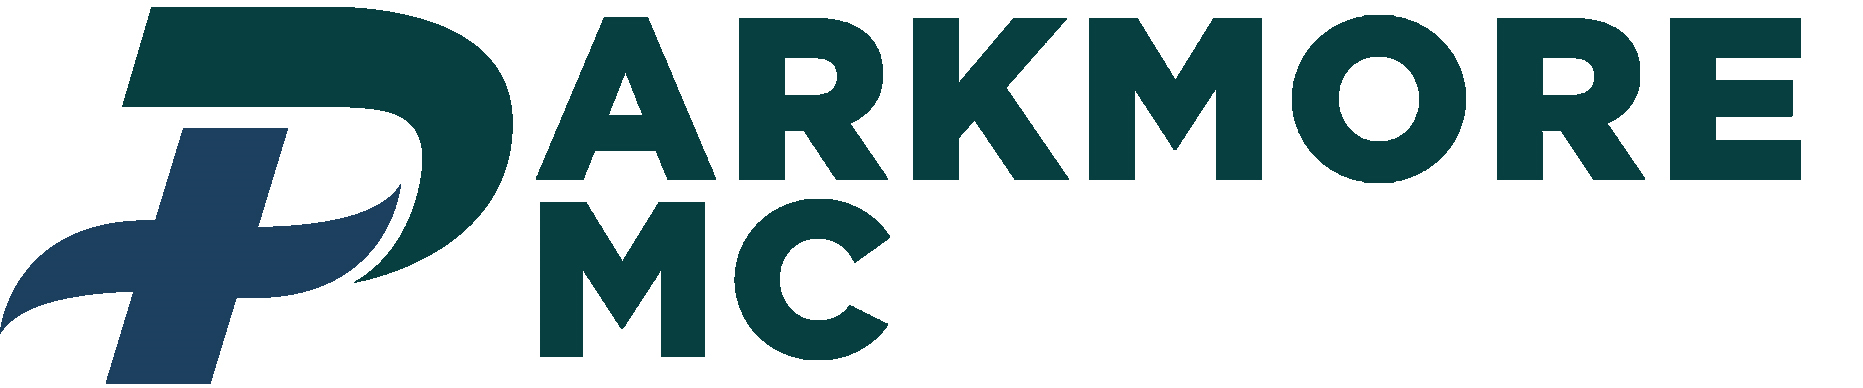 PARKMORE MEDICAL CENTRE Logo